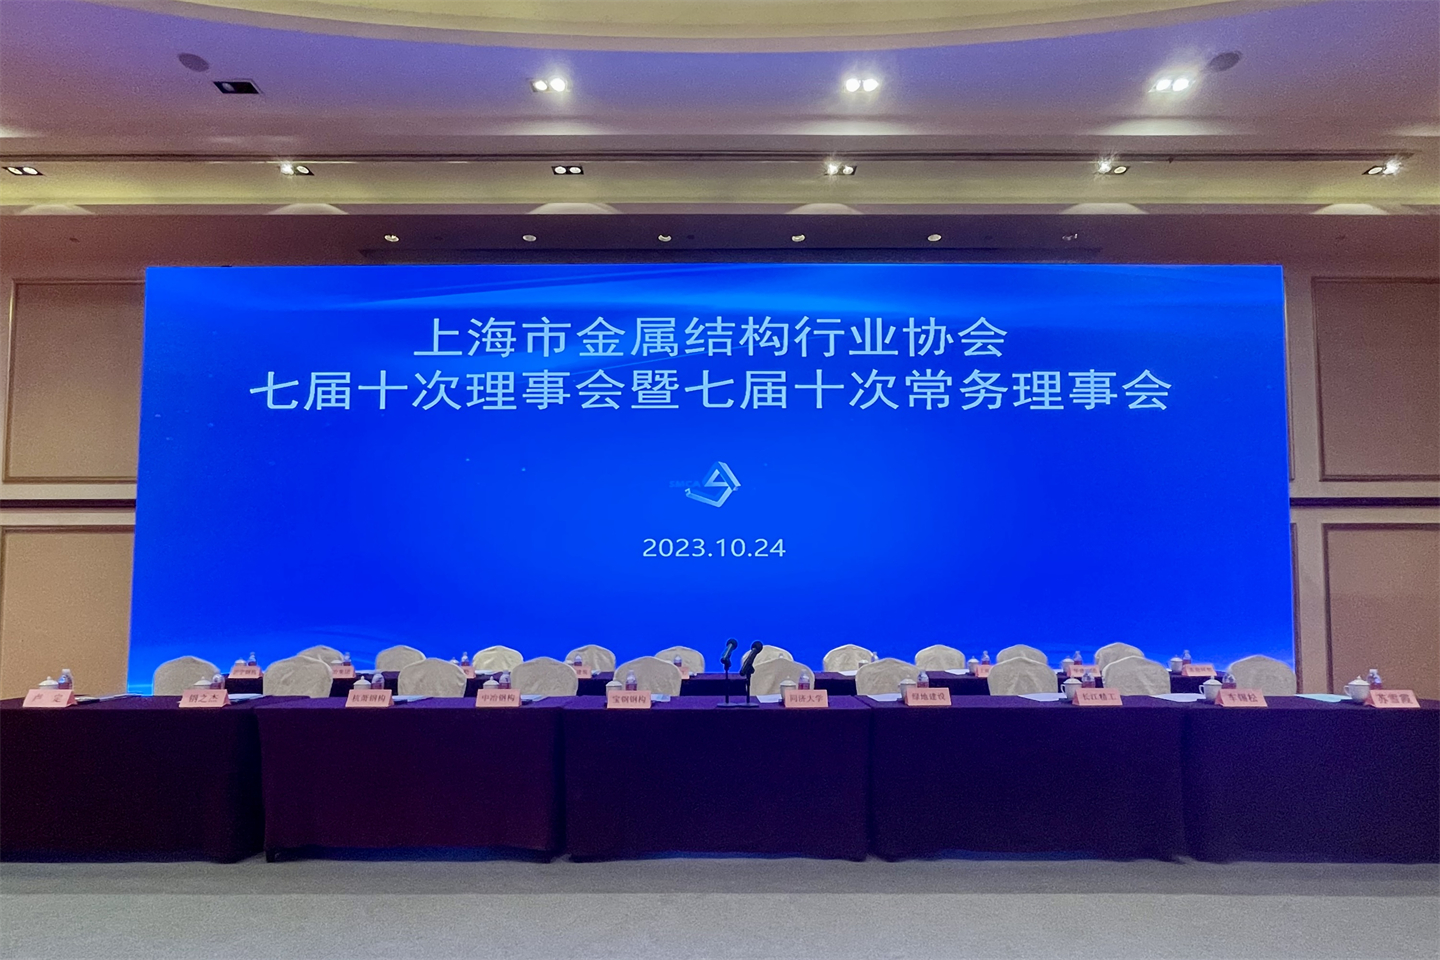 Buenas noticias: wiskind ganó el 2022 Shanghai Metal estructura industria empresa integridad(图1)